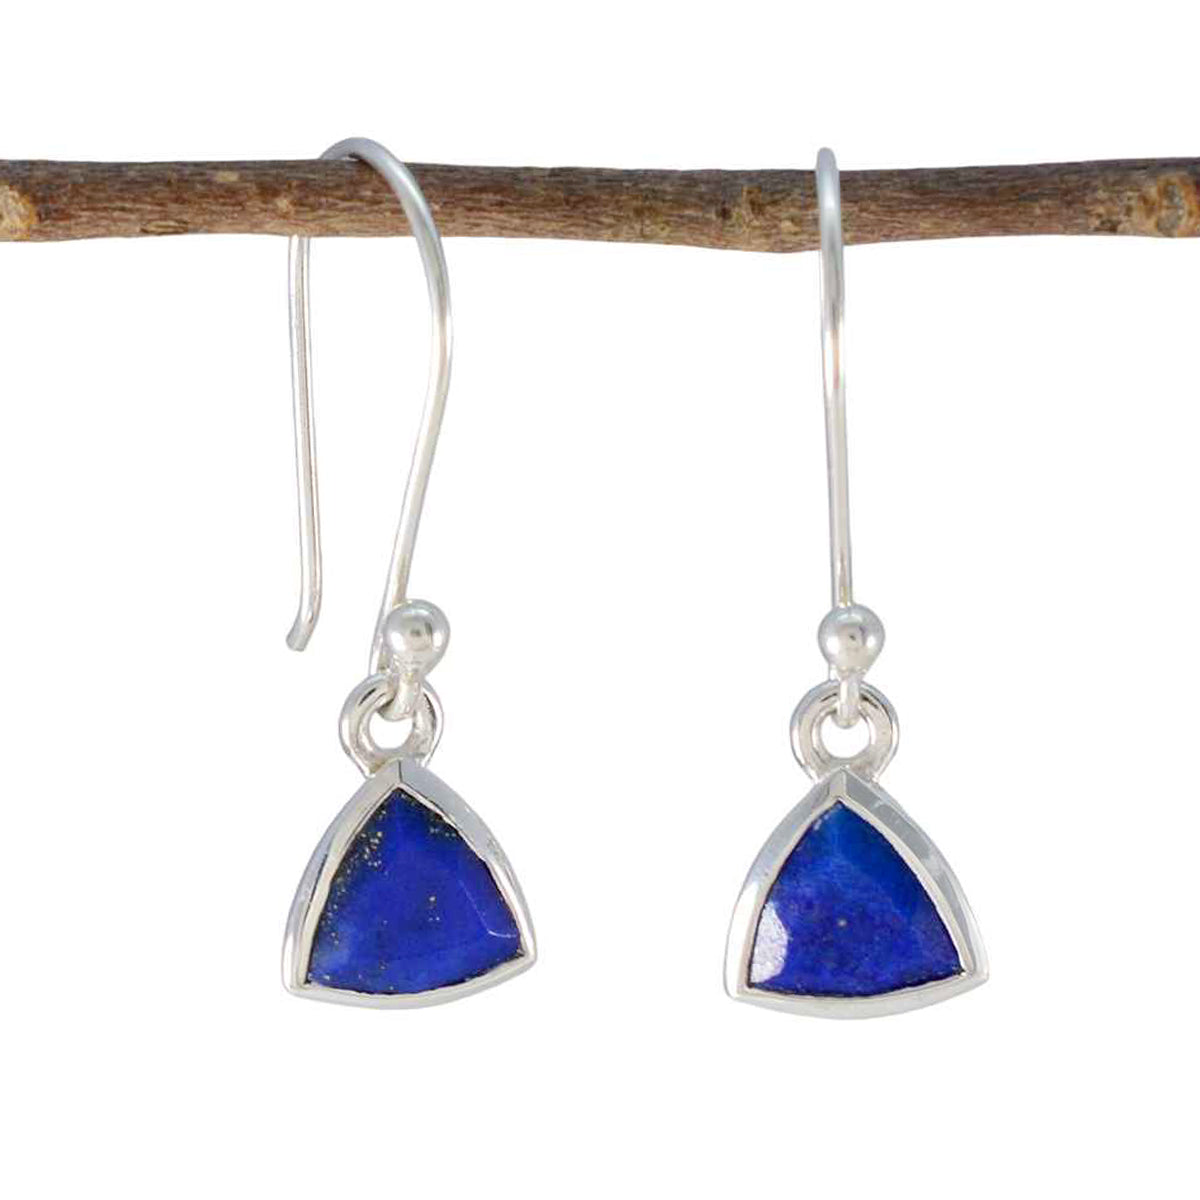 Riyo engageant 925 boucle d'oreille en argent sterling pour femme lapis lazuli boucle d'oreille réglage de la lunette boucle d'oreille bleue boucle d'oreille pendante